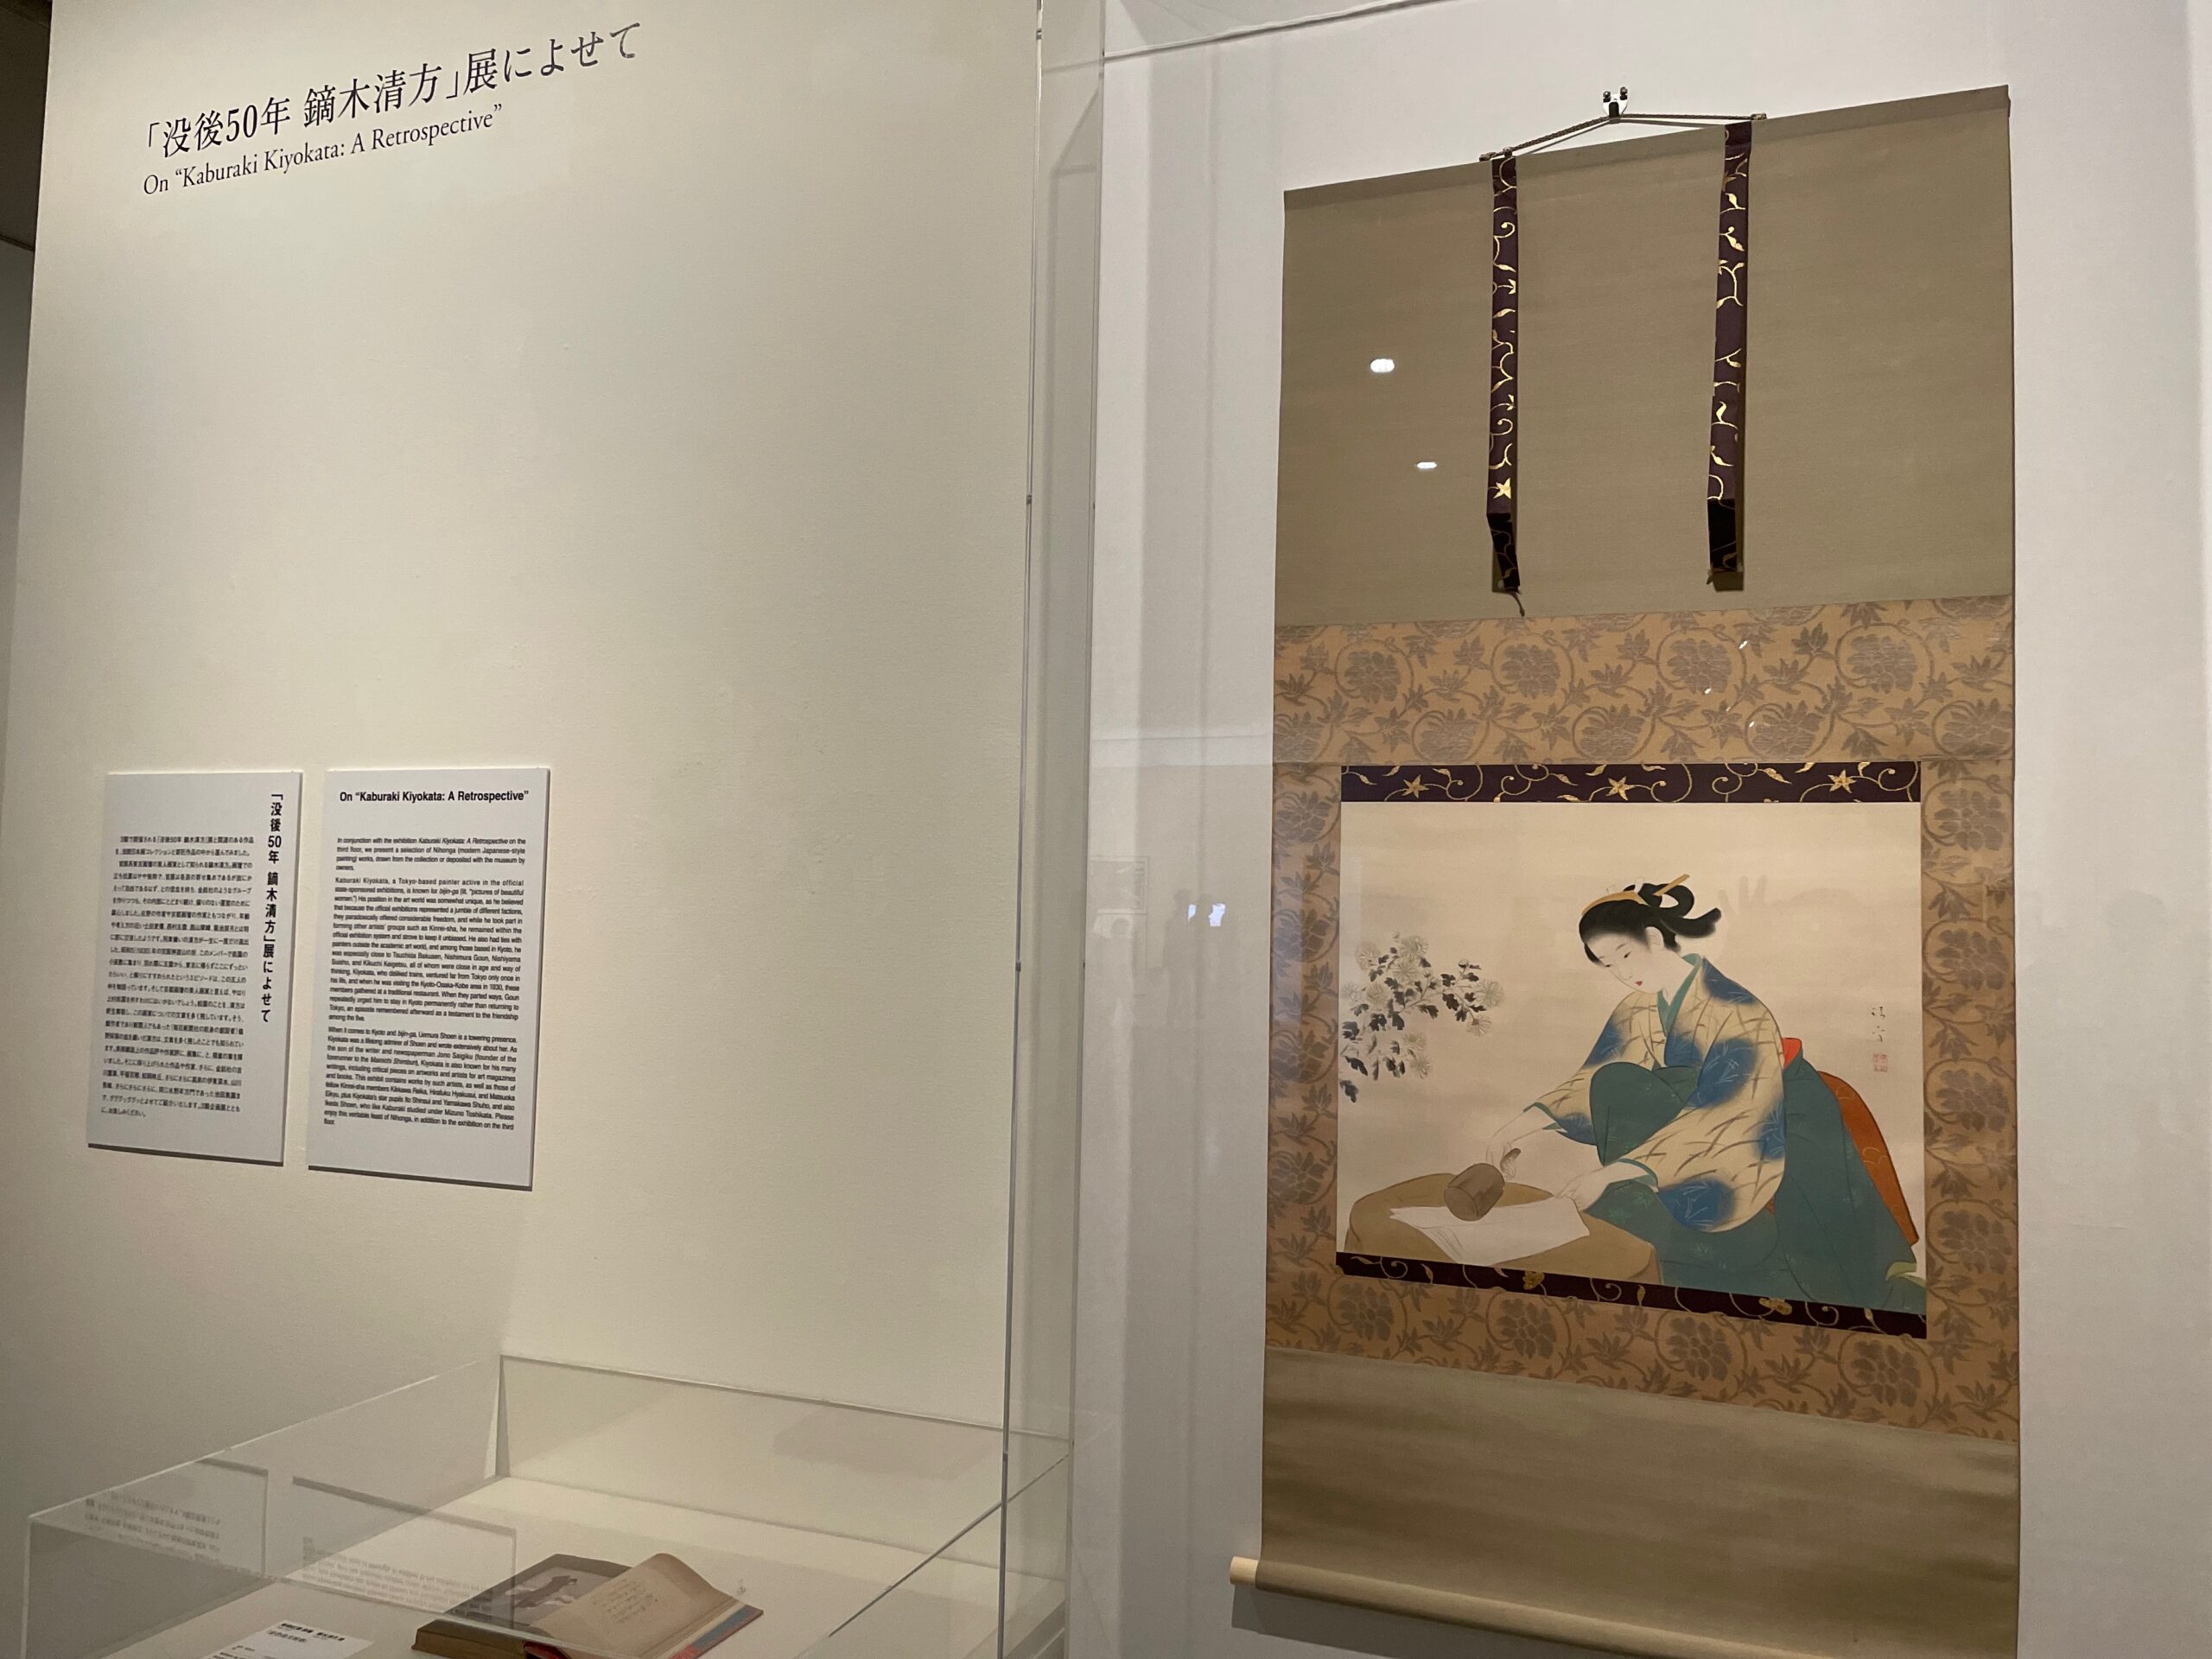 京都国際近代美術館にて企画展「没後50年鏑木清方展」によせて